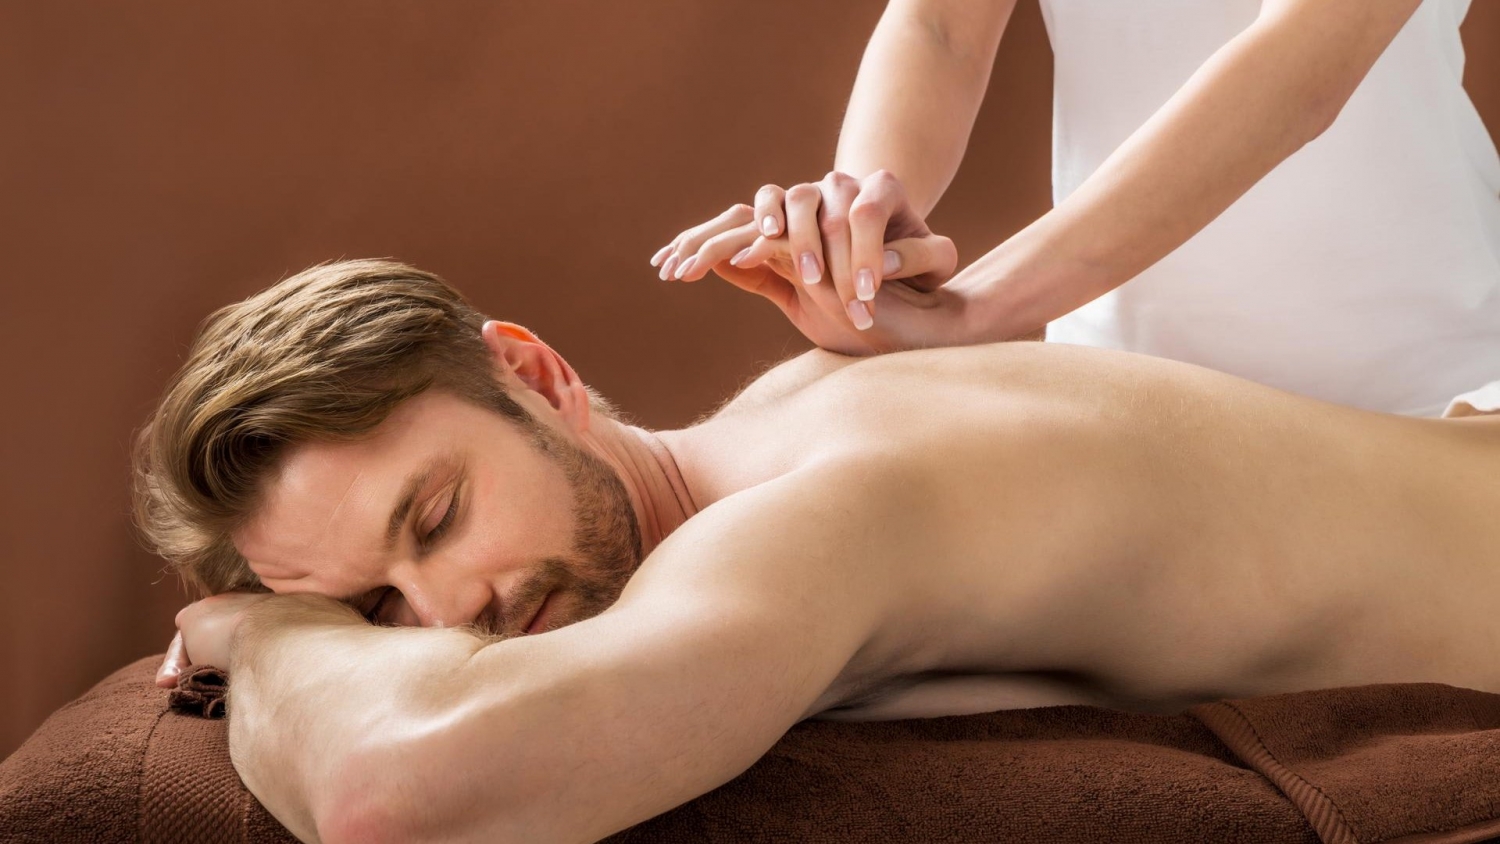 O que significa massagem grega?